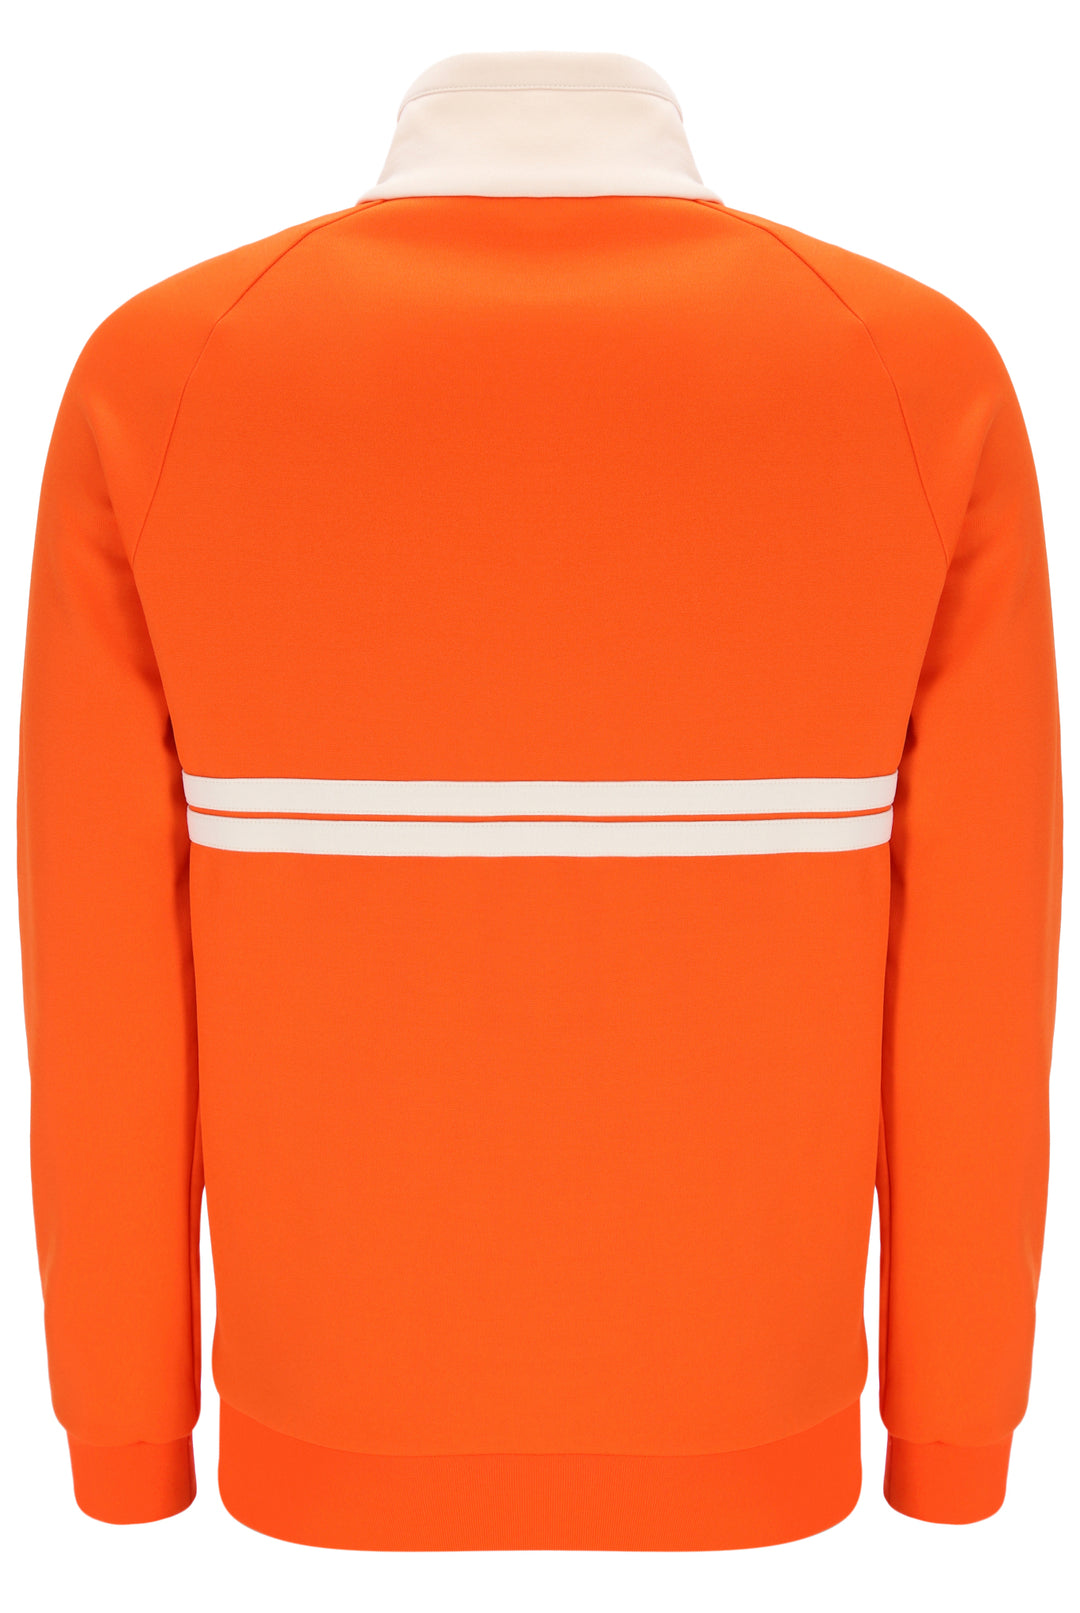 Sergio Tacchini Dallas Track Top Orange/Cream - Urban Menswear